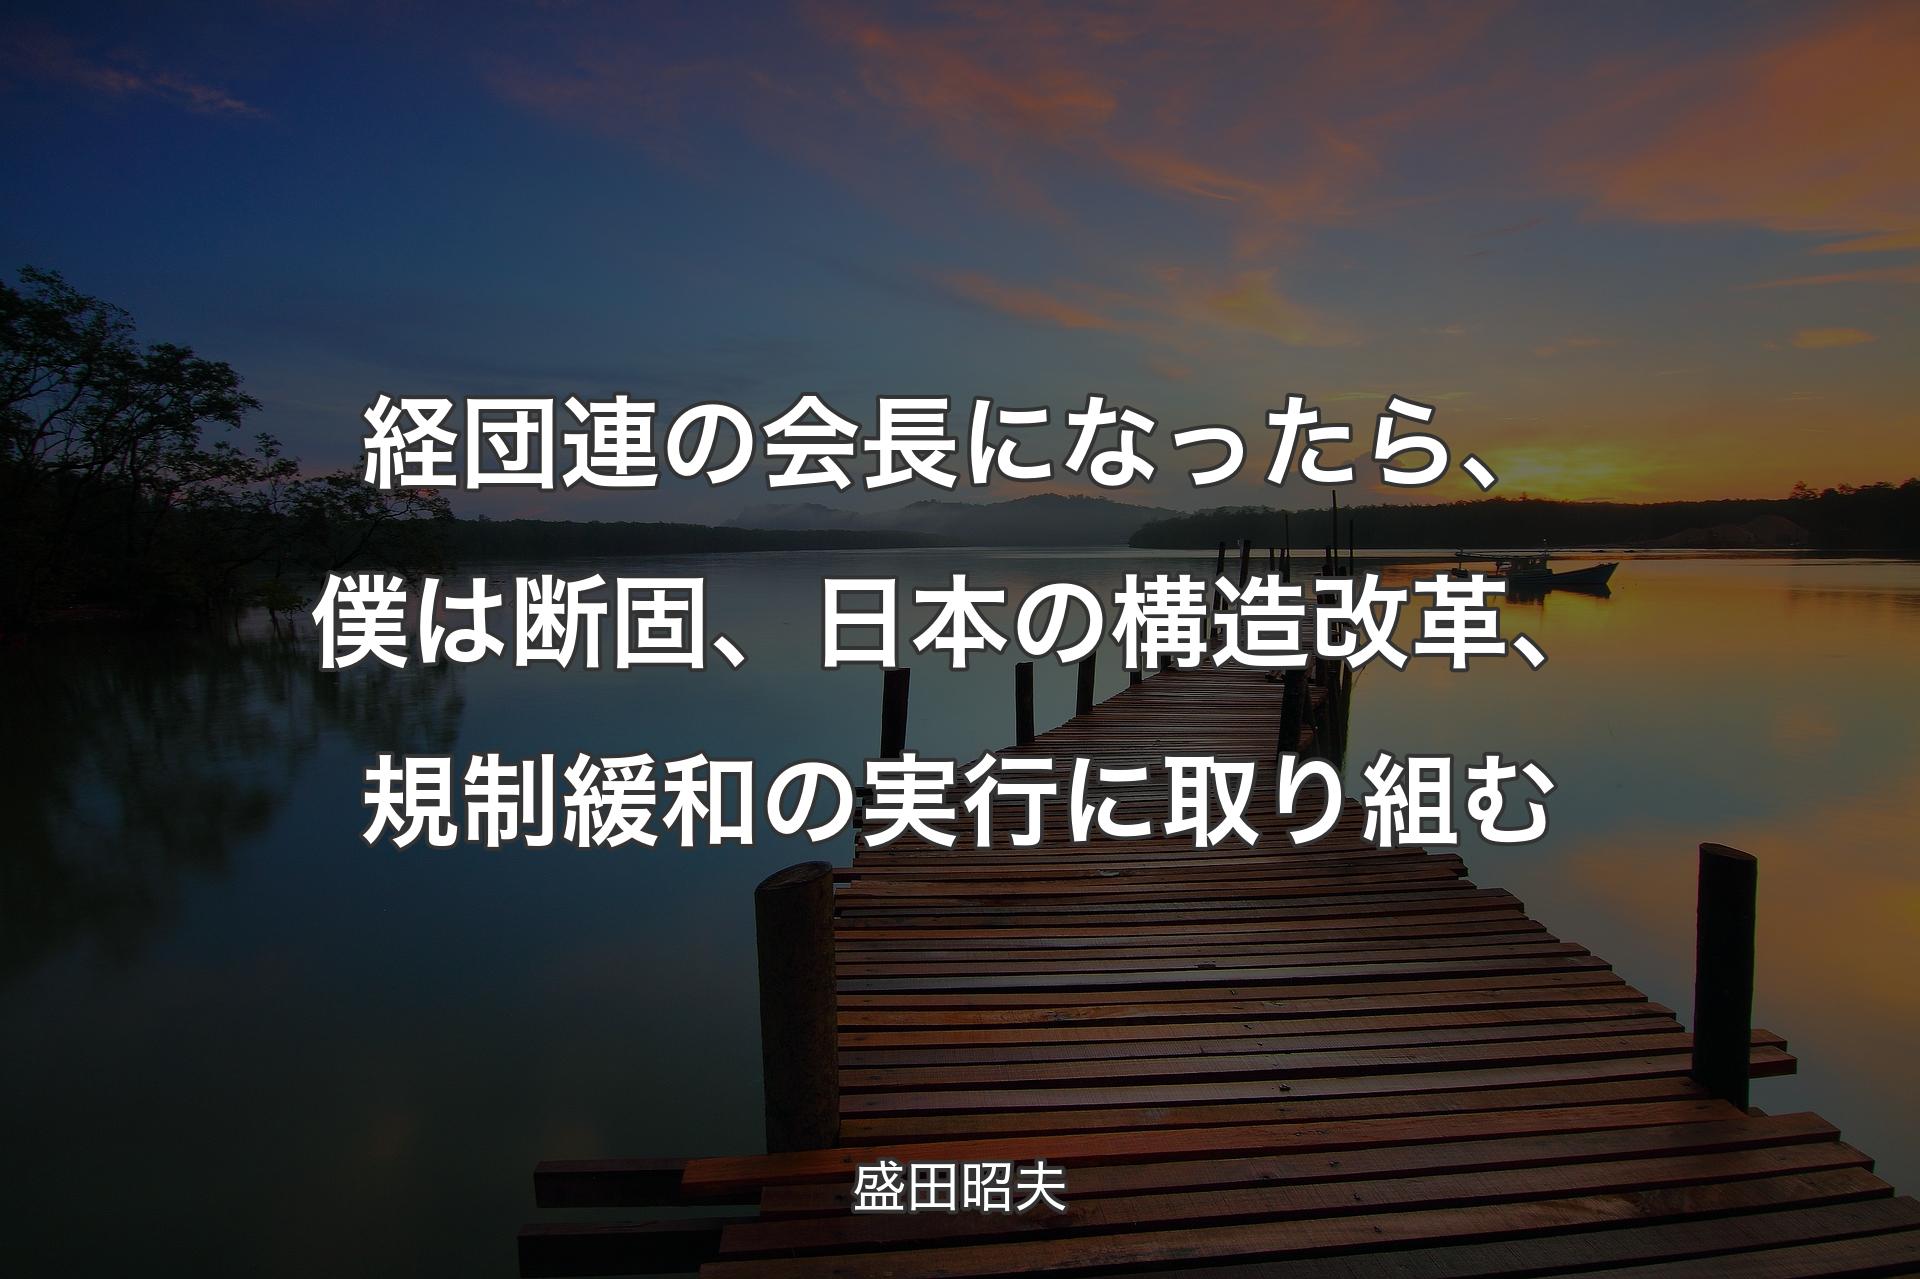 【背景3】経団連の会長になったら、僕は断固、日本の構造改革、規制緩和の実行に取り組む - 盛田昭夫